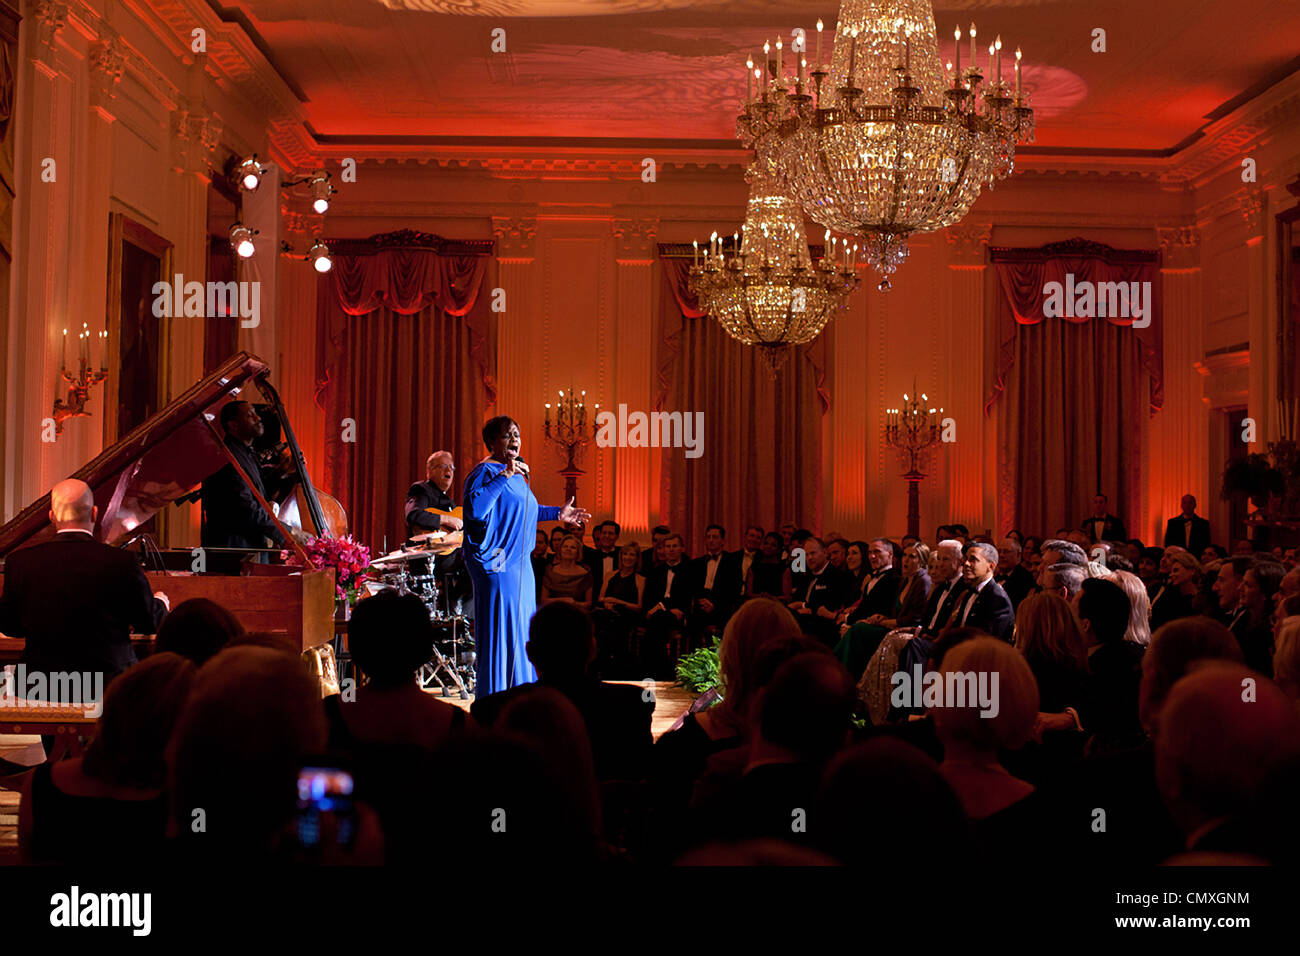 Dianne Reeves effectue dans l'East Room de la Maison blanche au cours de la National Governors Association, dîner dimanche, 26 février 2012. Banque D'Images